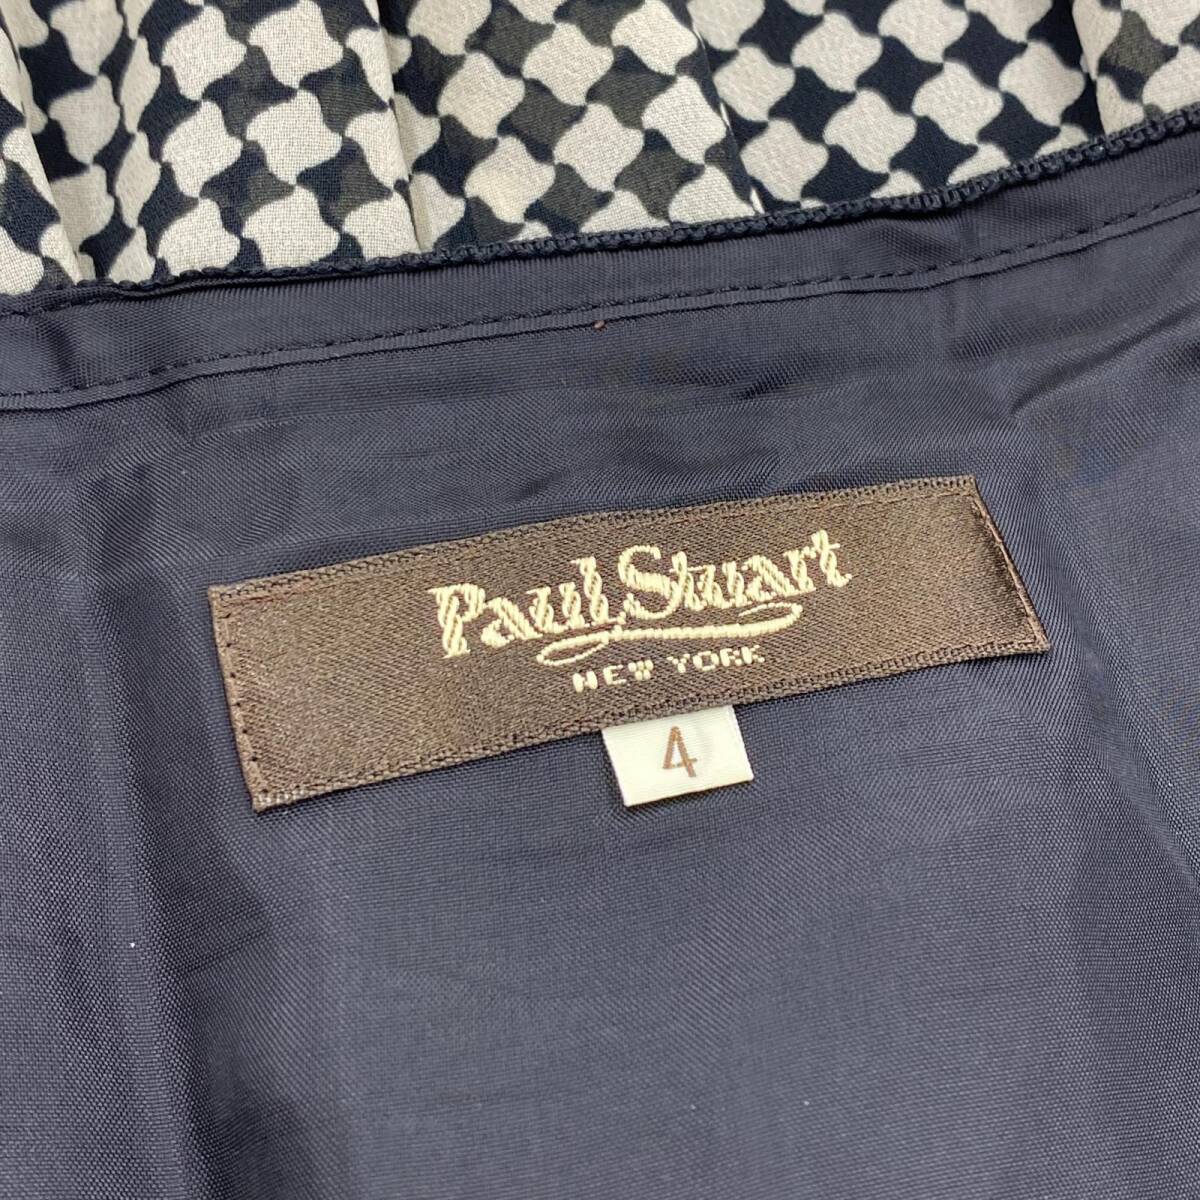 ゆうパケットOK PAUL STUART ポールスチュアート 総柄 スカート size4/ブラック×ベージュ レディース_画像5